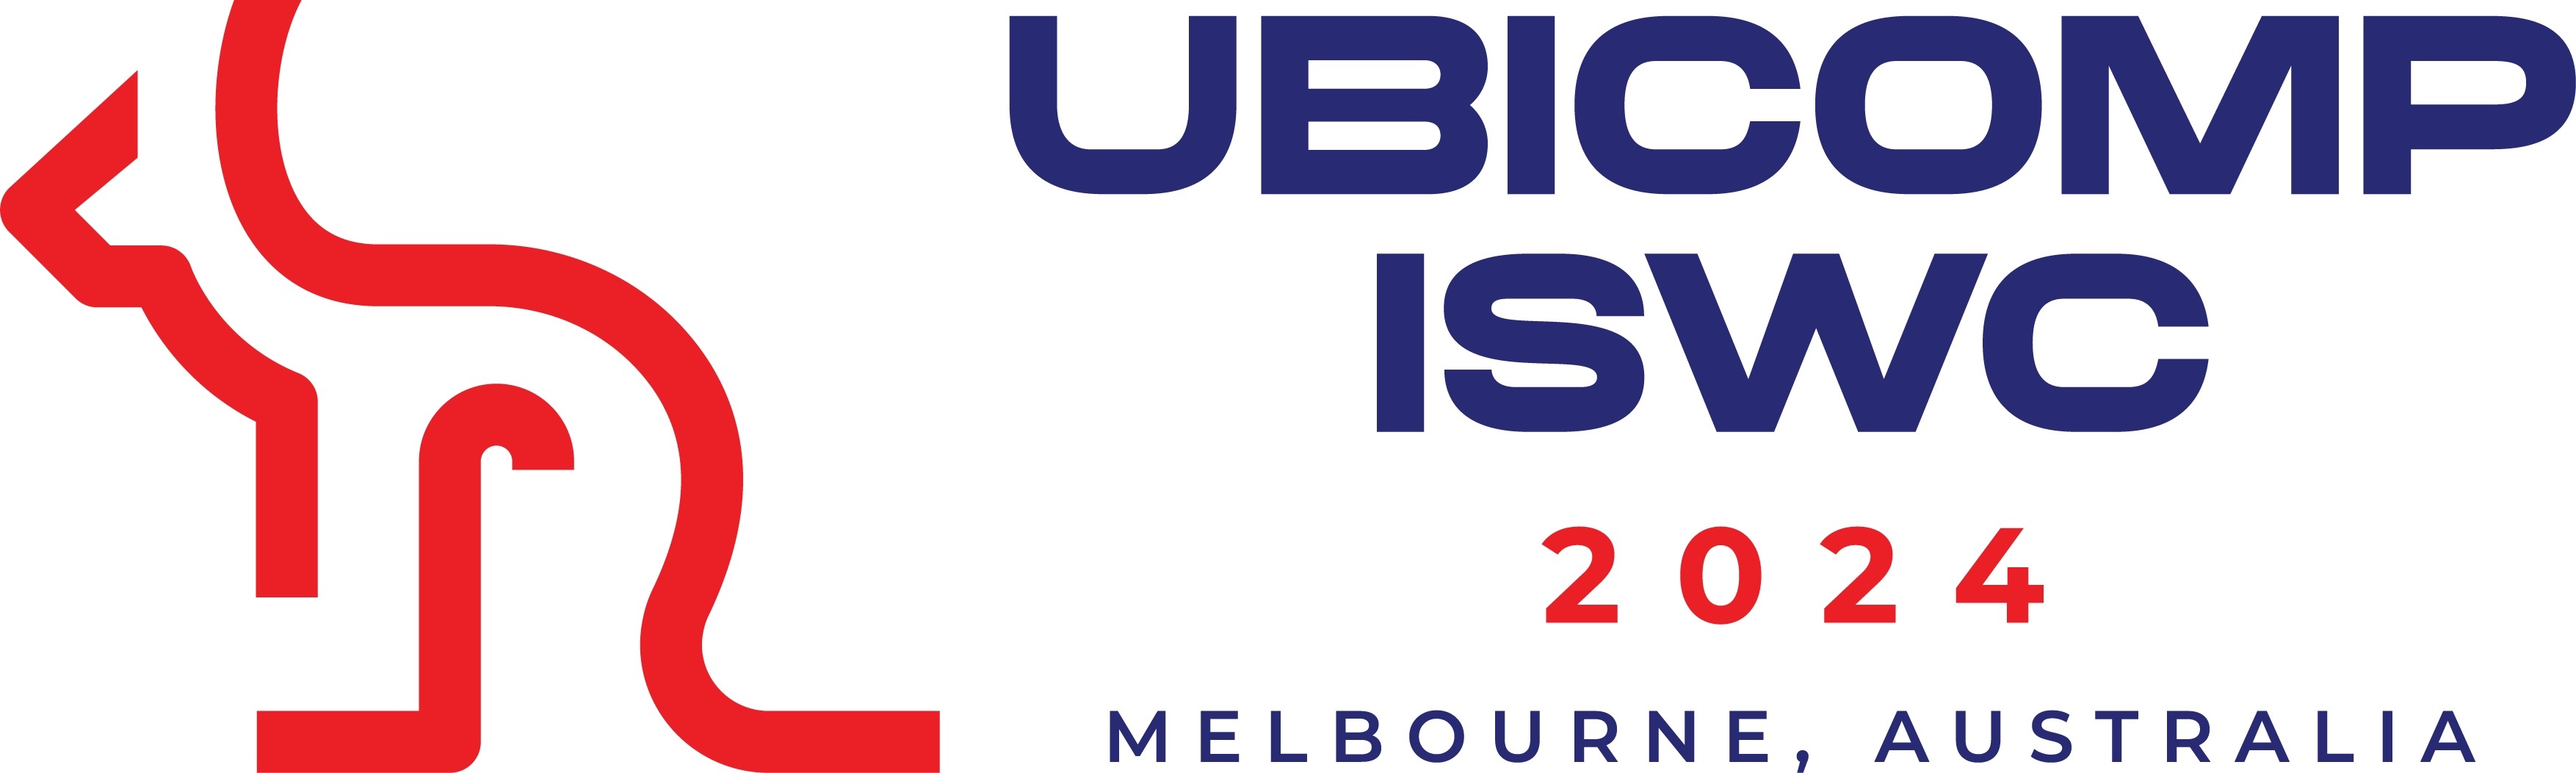 Ubicomp-ISWC 2024 Logo